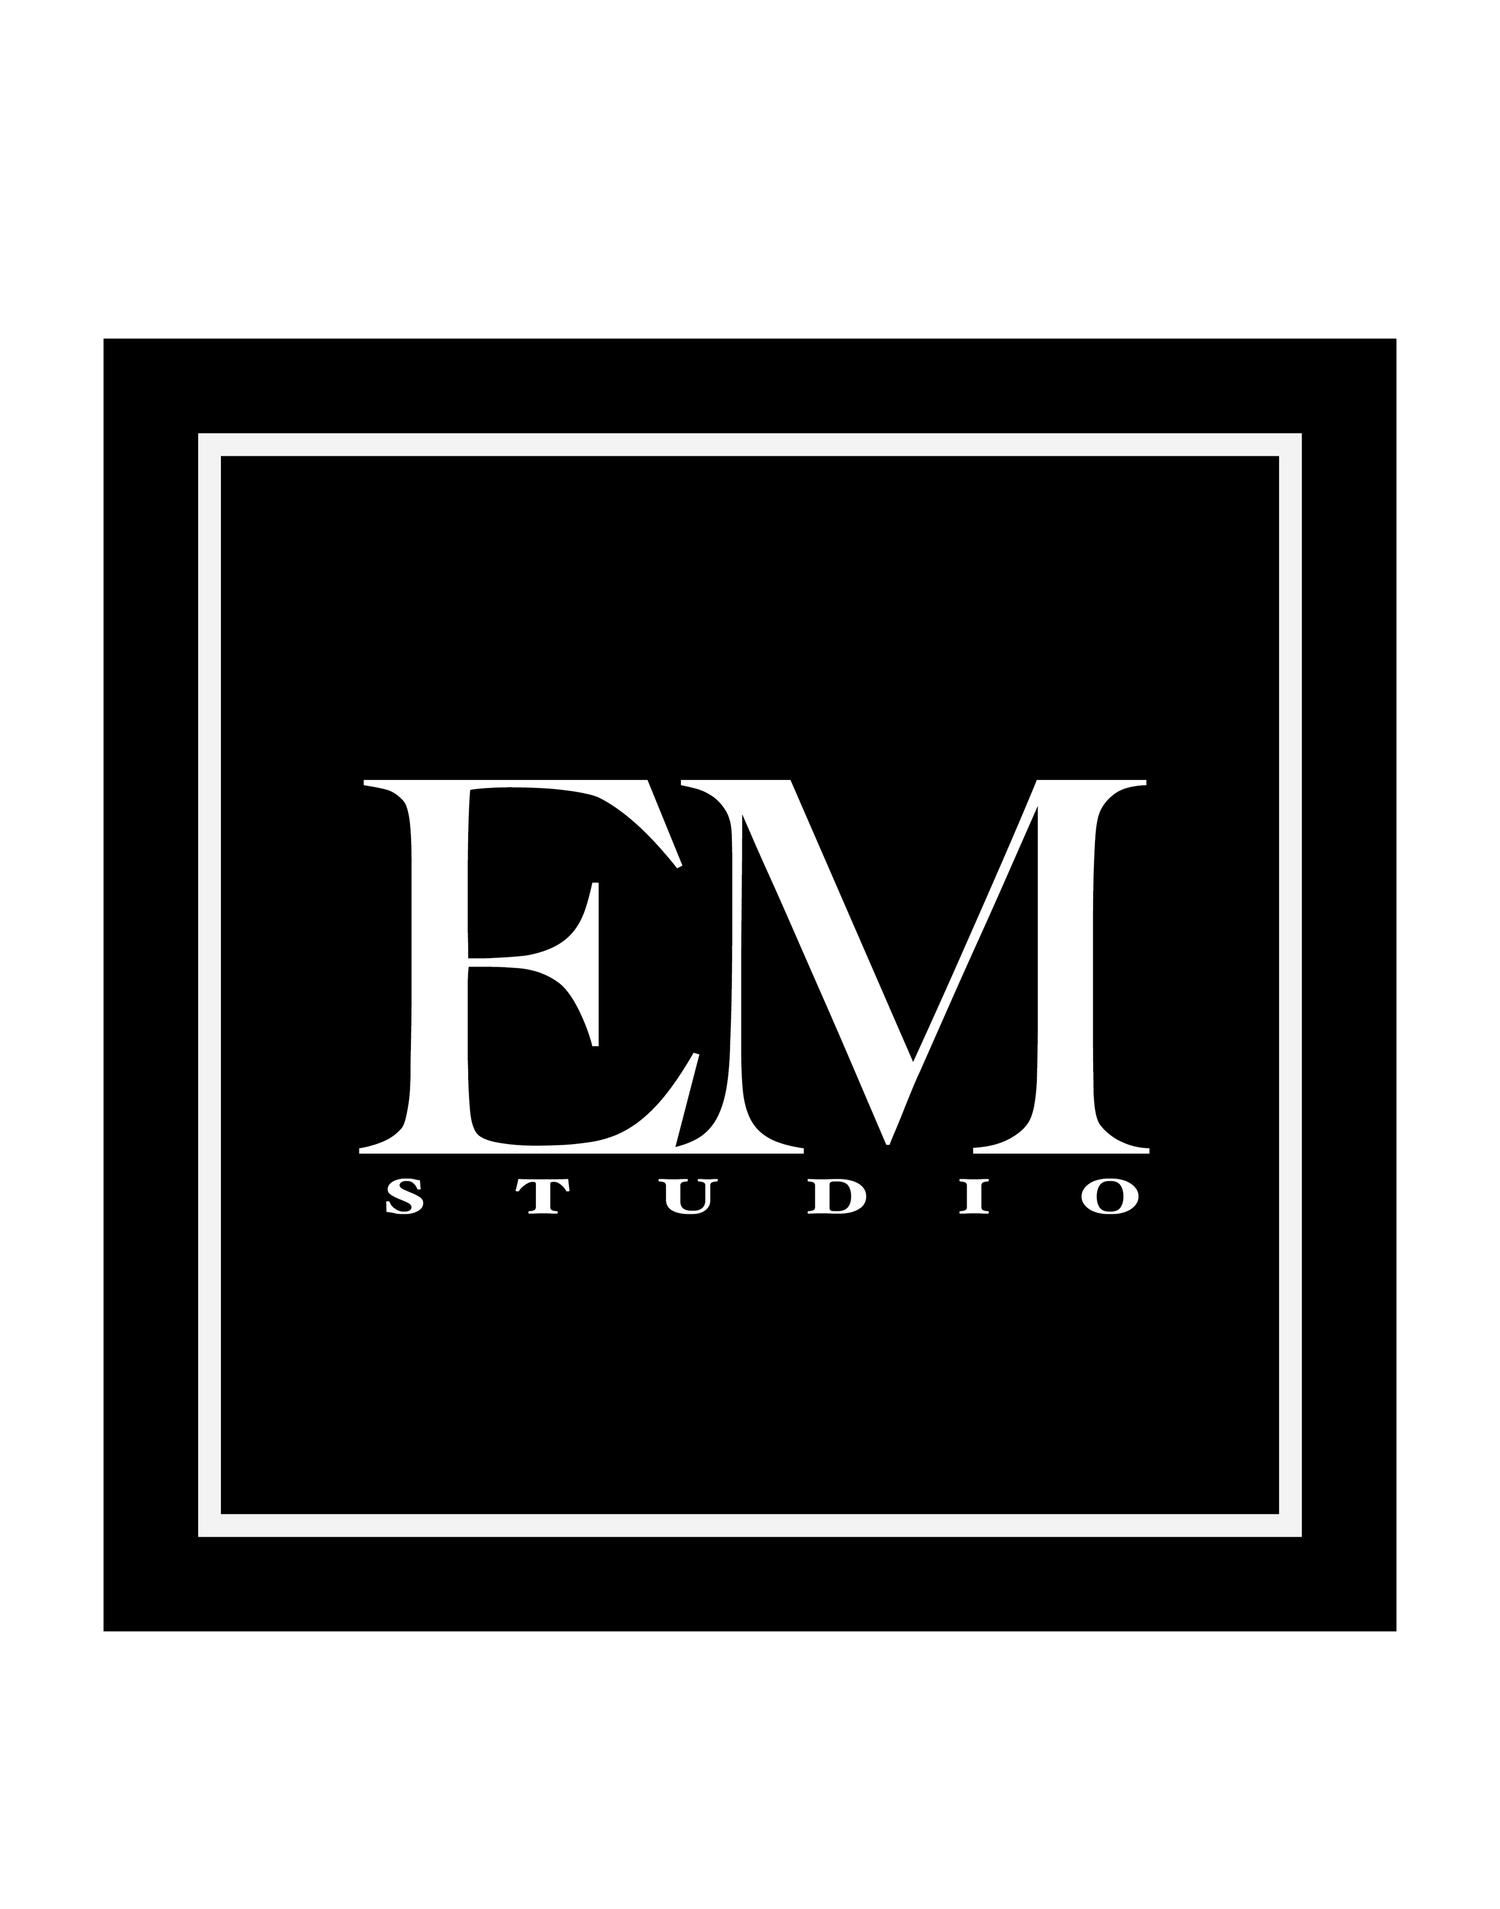 EM Studio